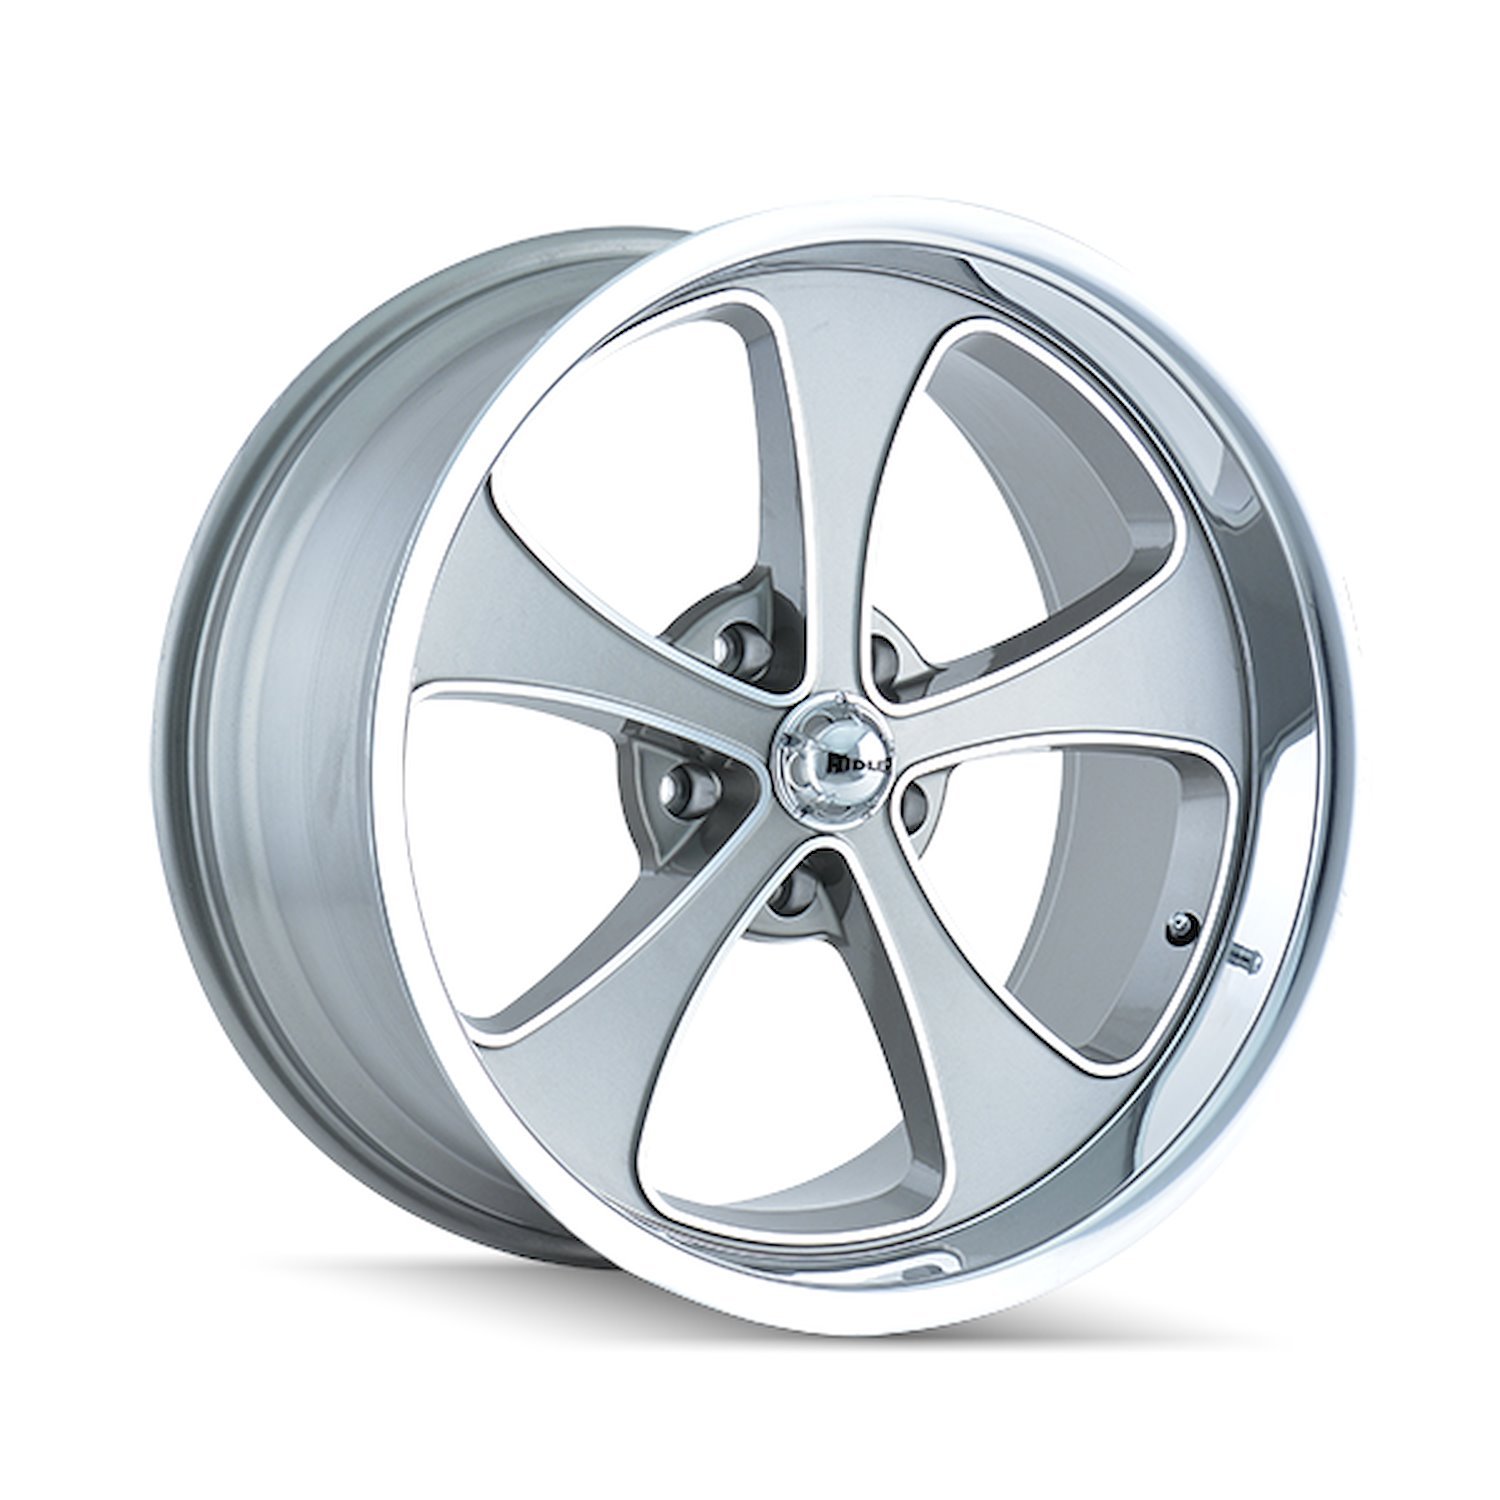 645-8965GP 645-Series Wheel [Size: 18" x 9.50"] Gloss Grey Machined/Polished Finish